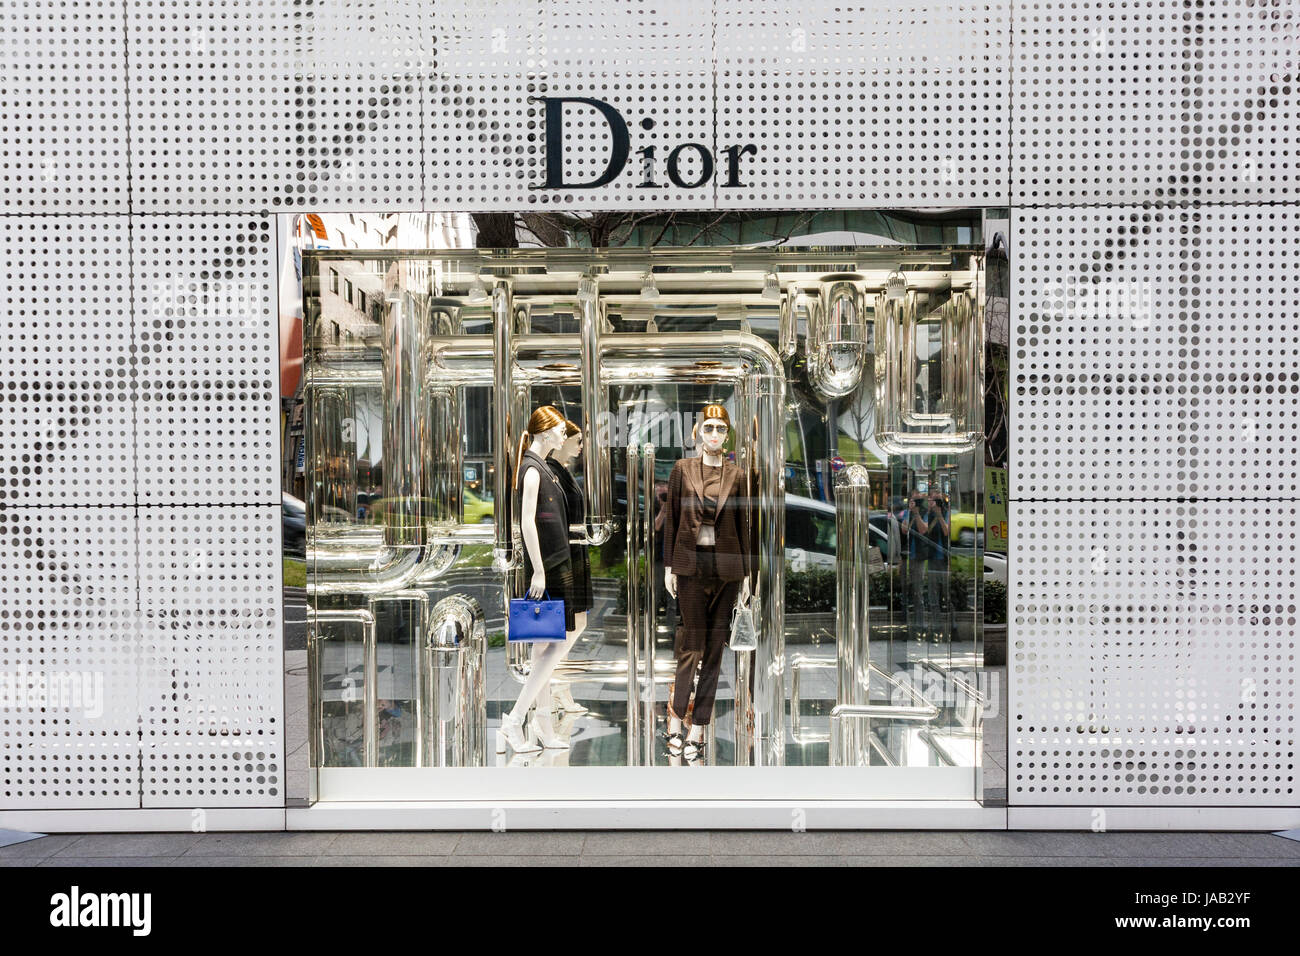 Giappone, Osaka, Shinsaibashi. Dior fashion store negozio finestra con abito visualizzare circondato da griglia grigia parete modellato, con il nome di finestra di cui sopra. Foto Stock